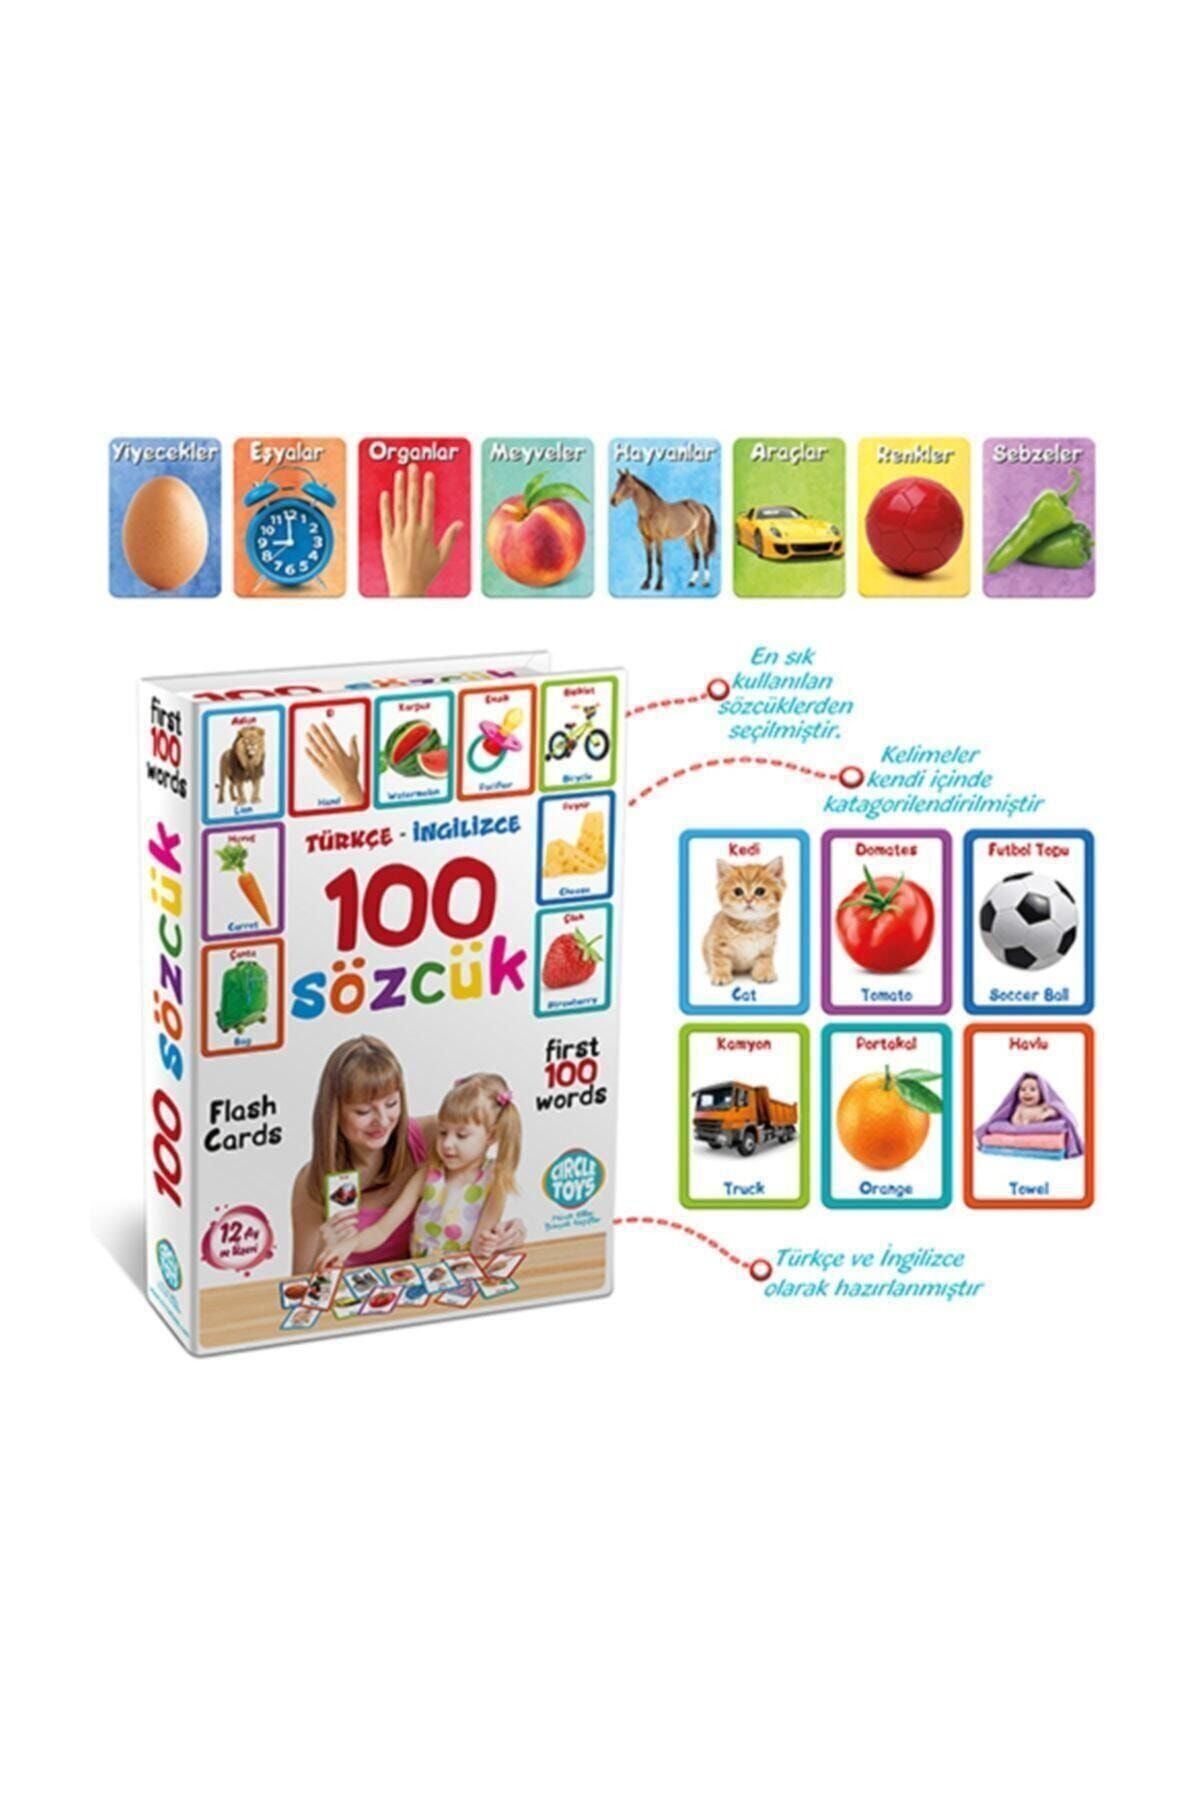 Circle Toys Ilk 100 Sözcük Flash Cards Türkçe - Ingilizce Kelime Kartları